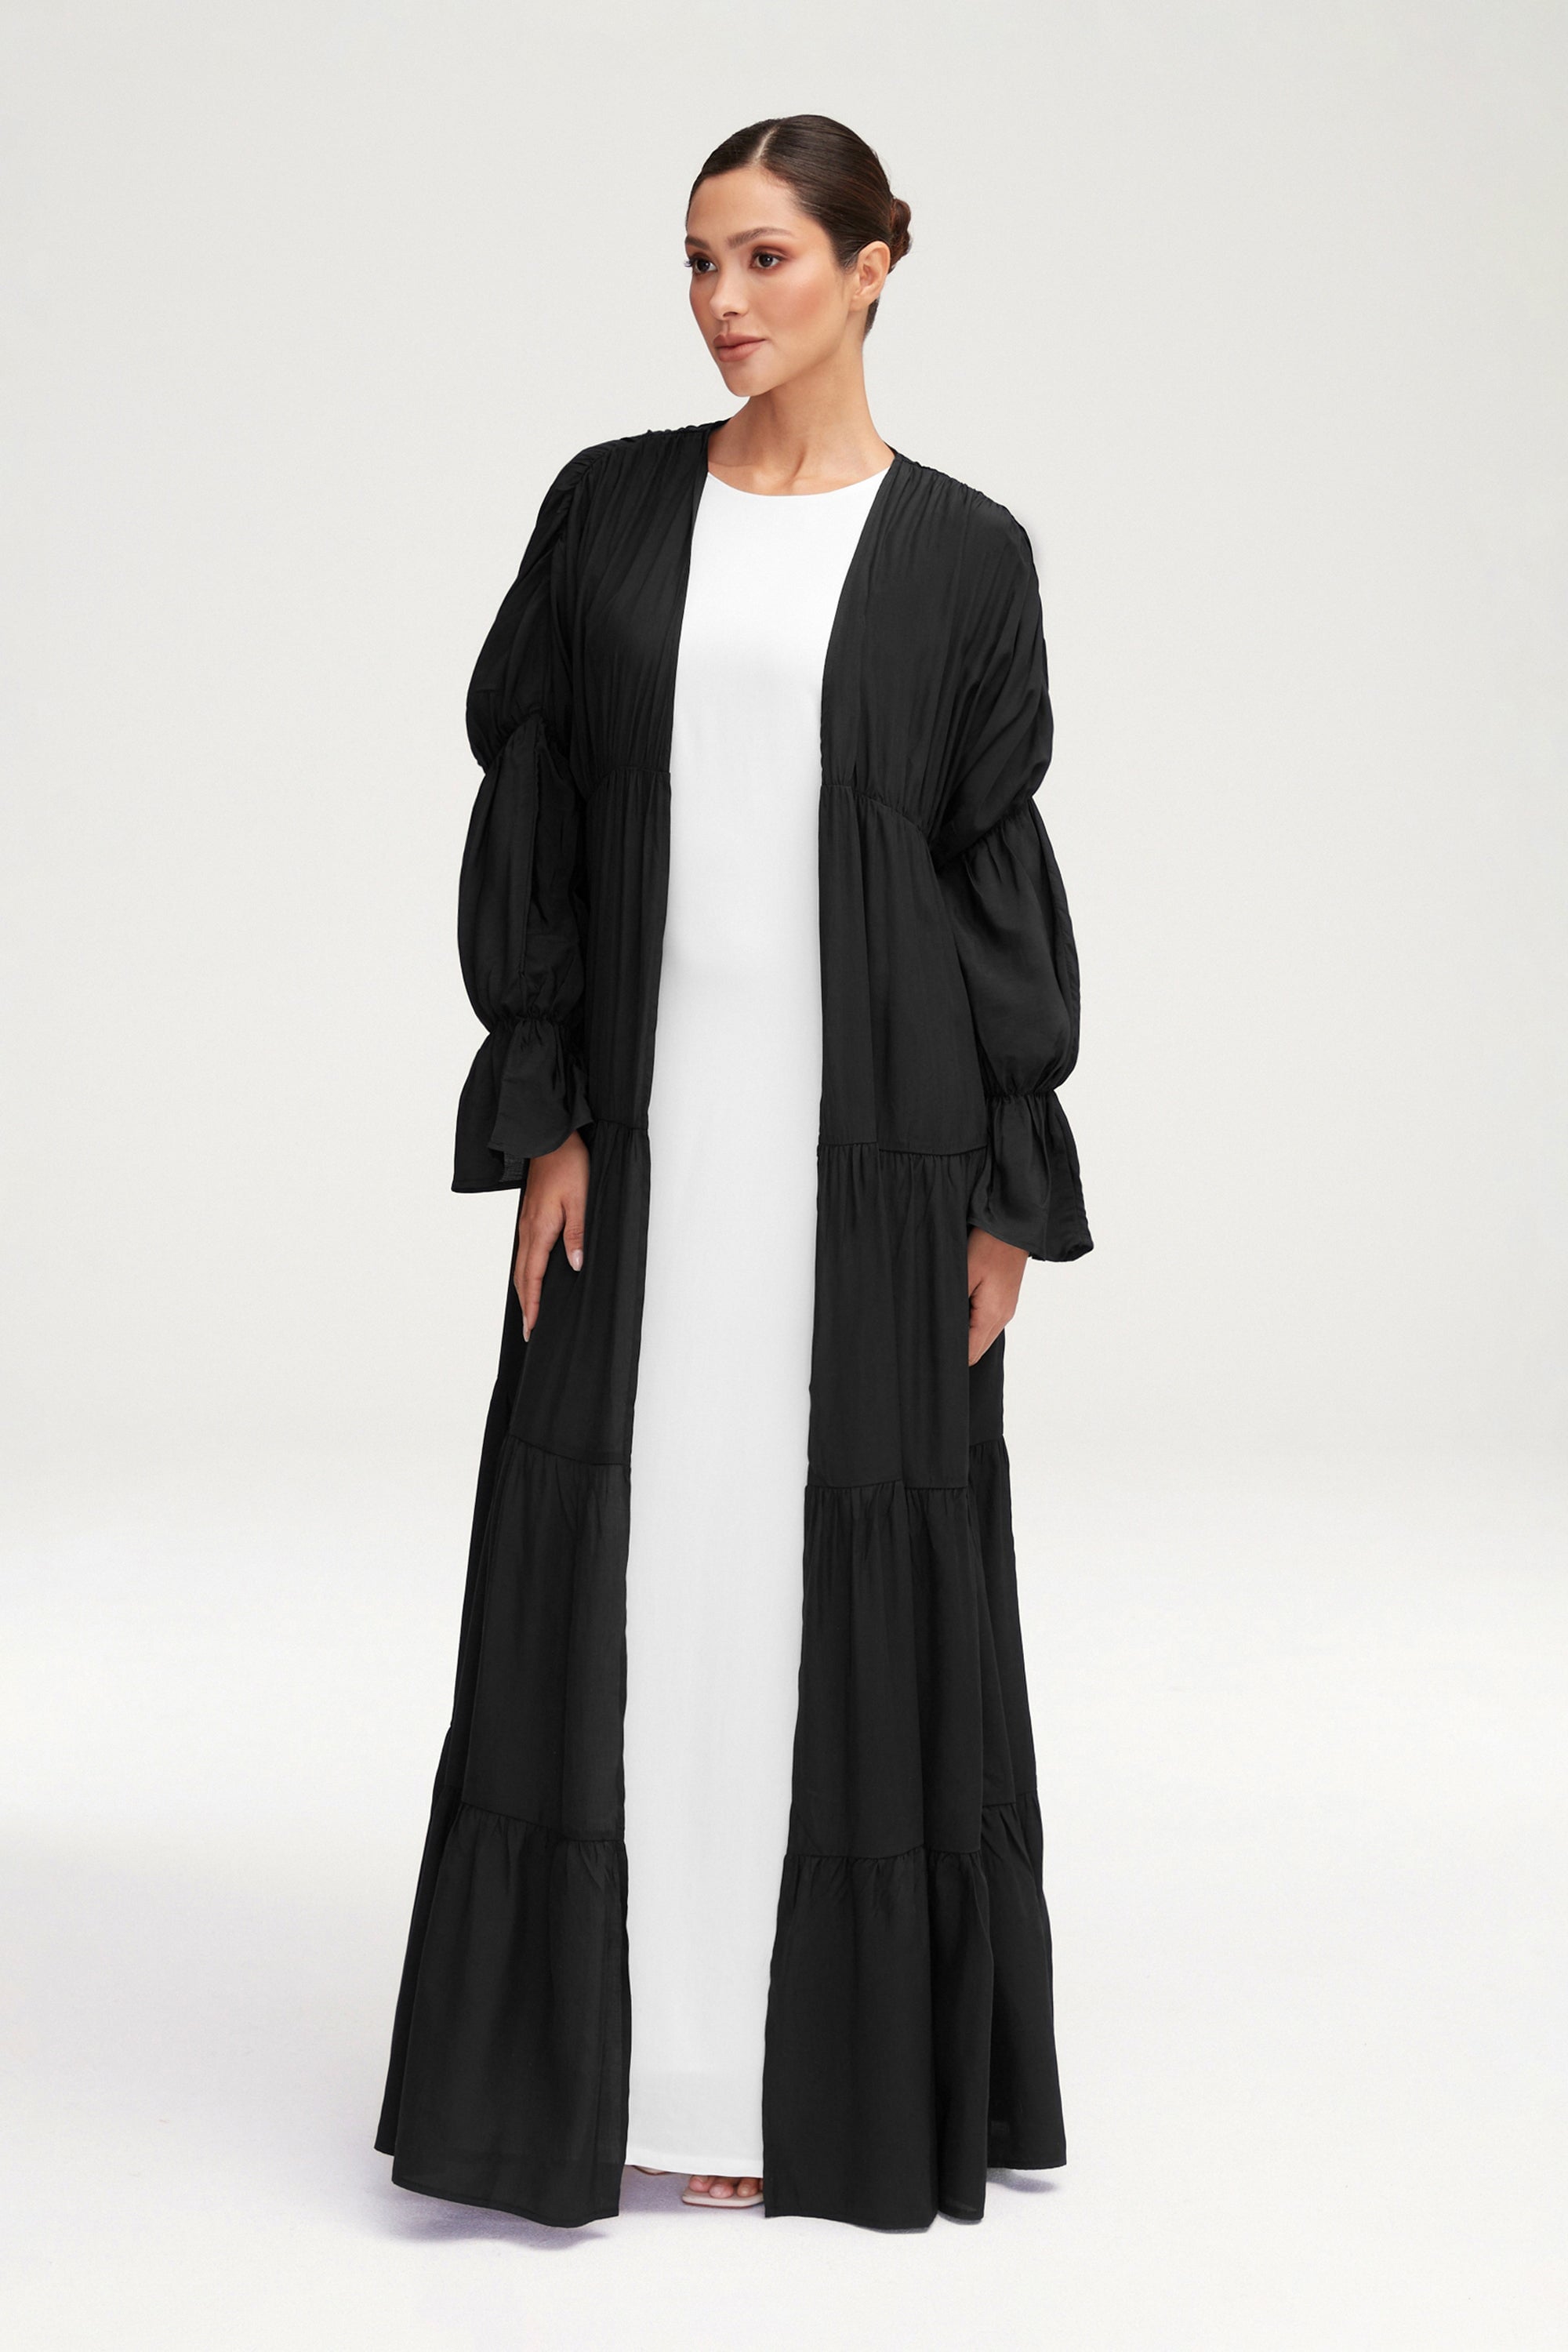 Malika Open Abaya - Black Clothing Veiled 